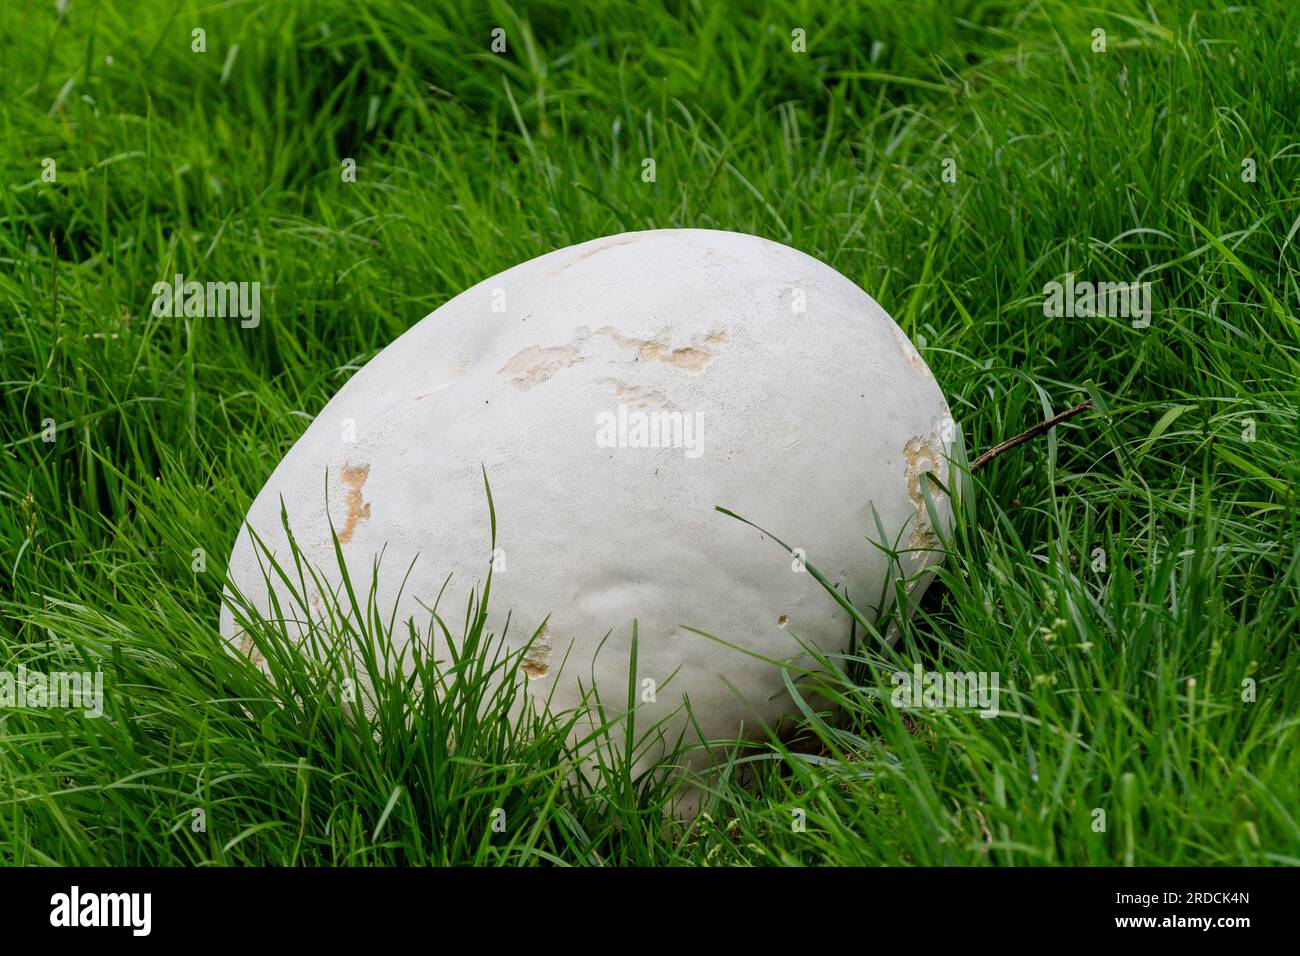 Riesen-Puffball-Pilz Calvatia gigantea oder Riesen-Puffball-Pilz, der auf dem Grasfeld wächst. Stockfoto